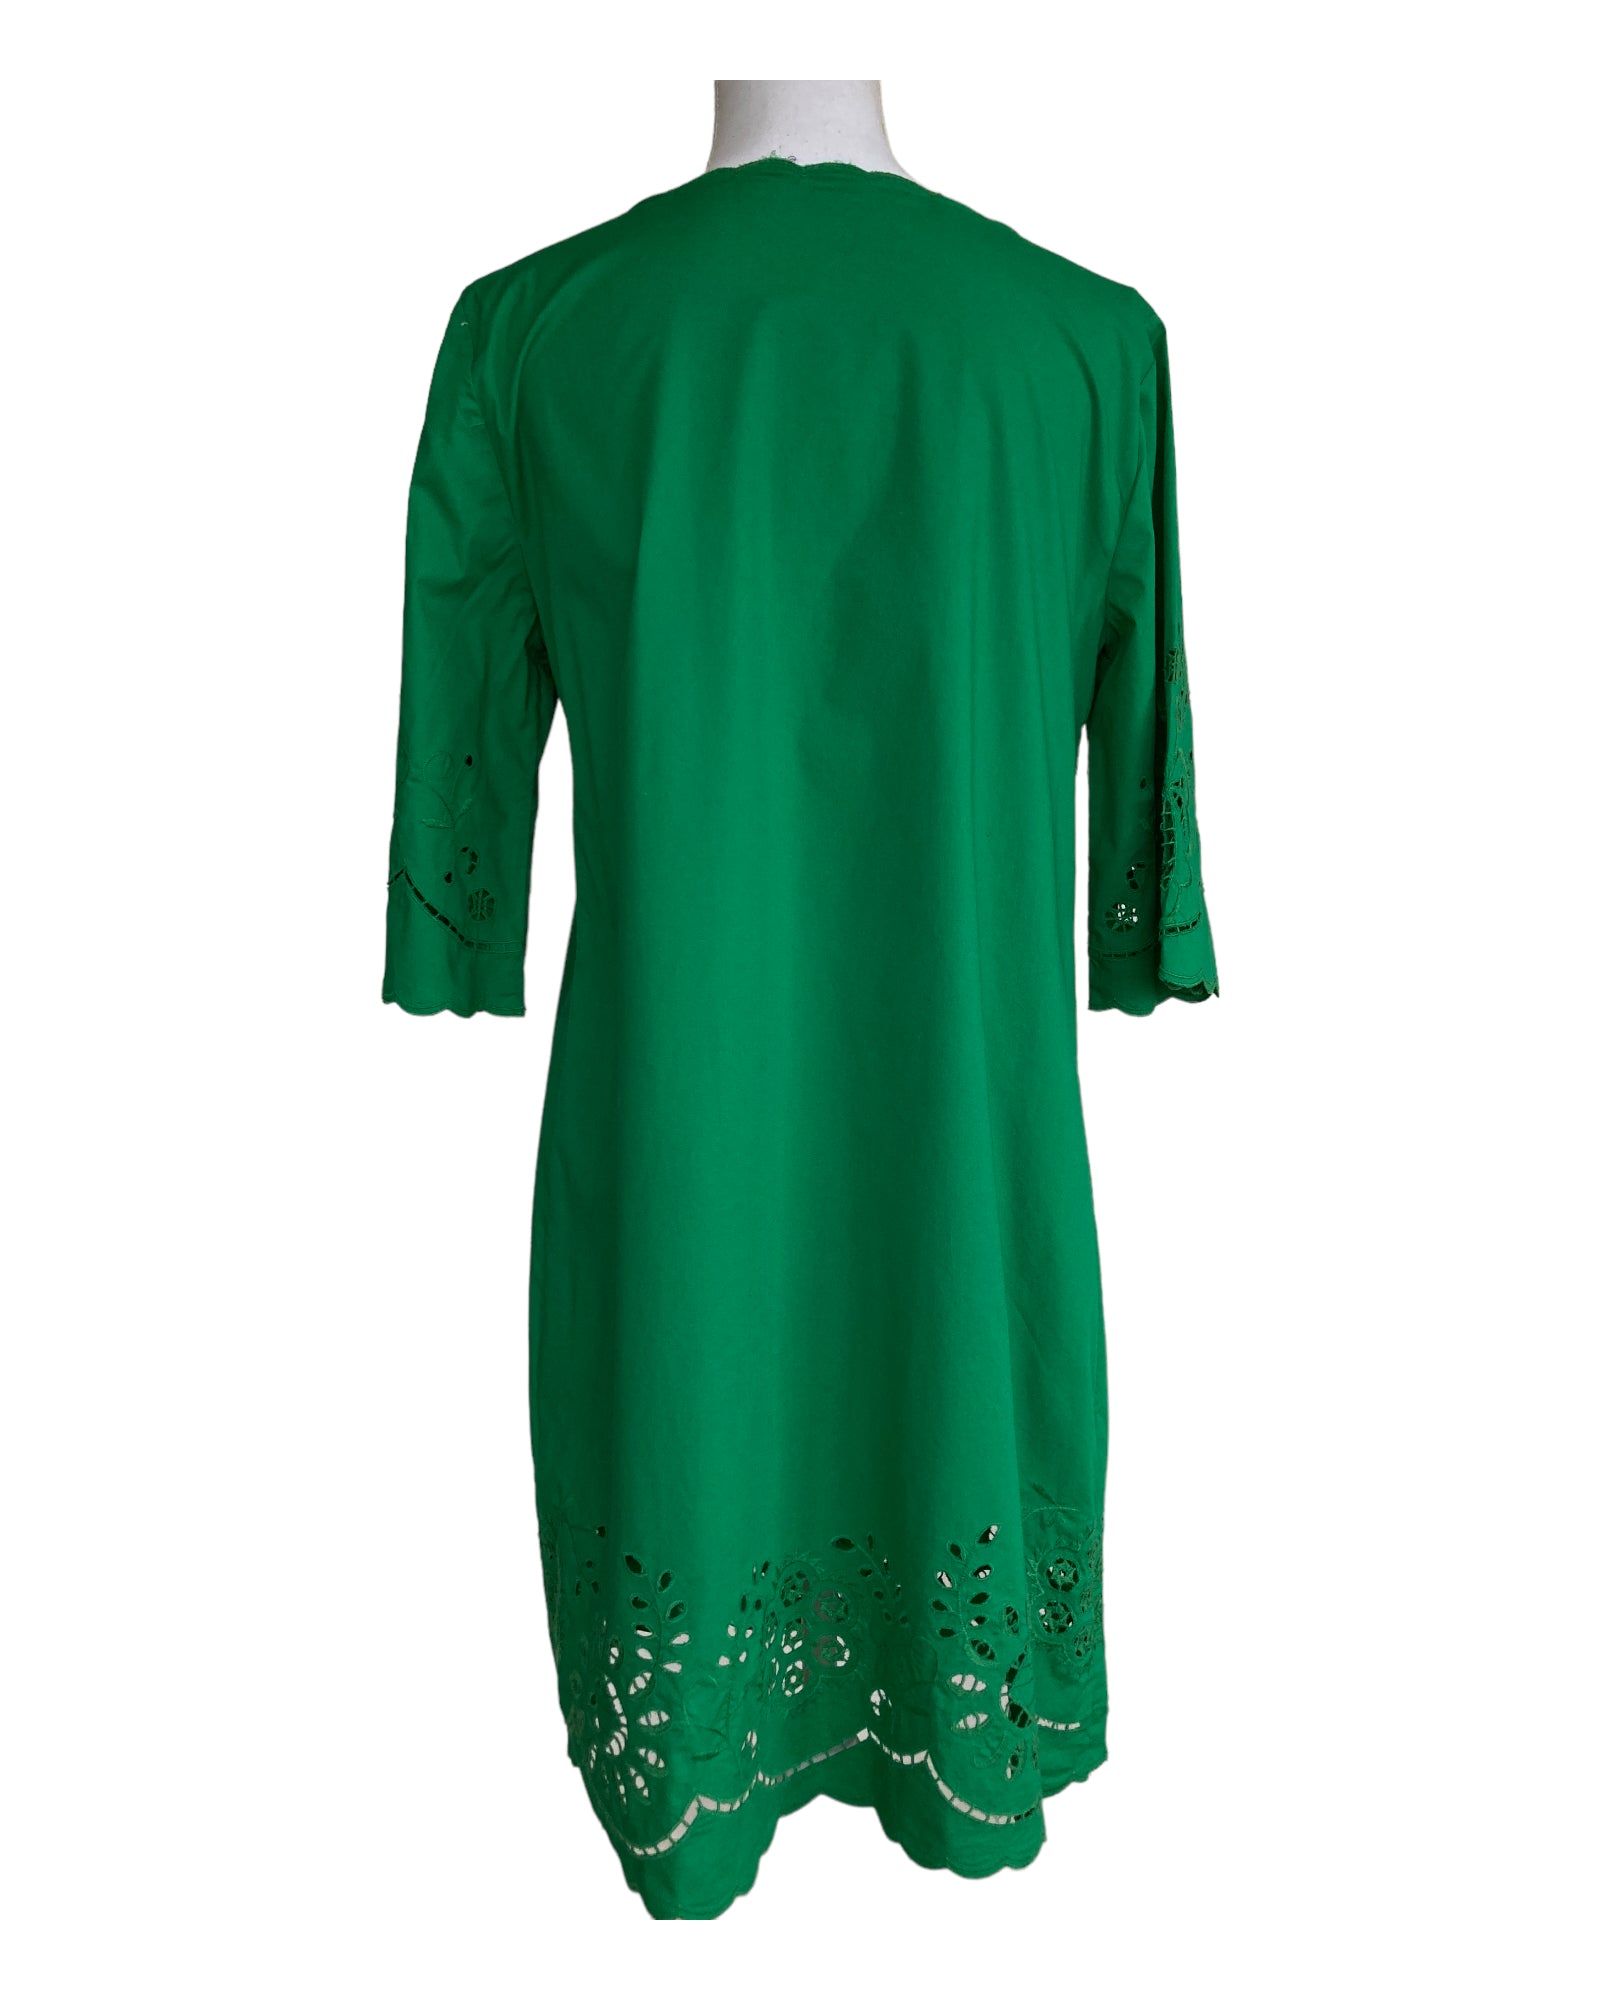 DKNY Green Eyelet Dress, M